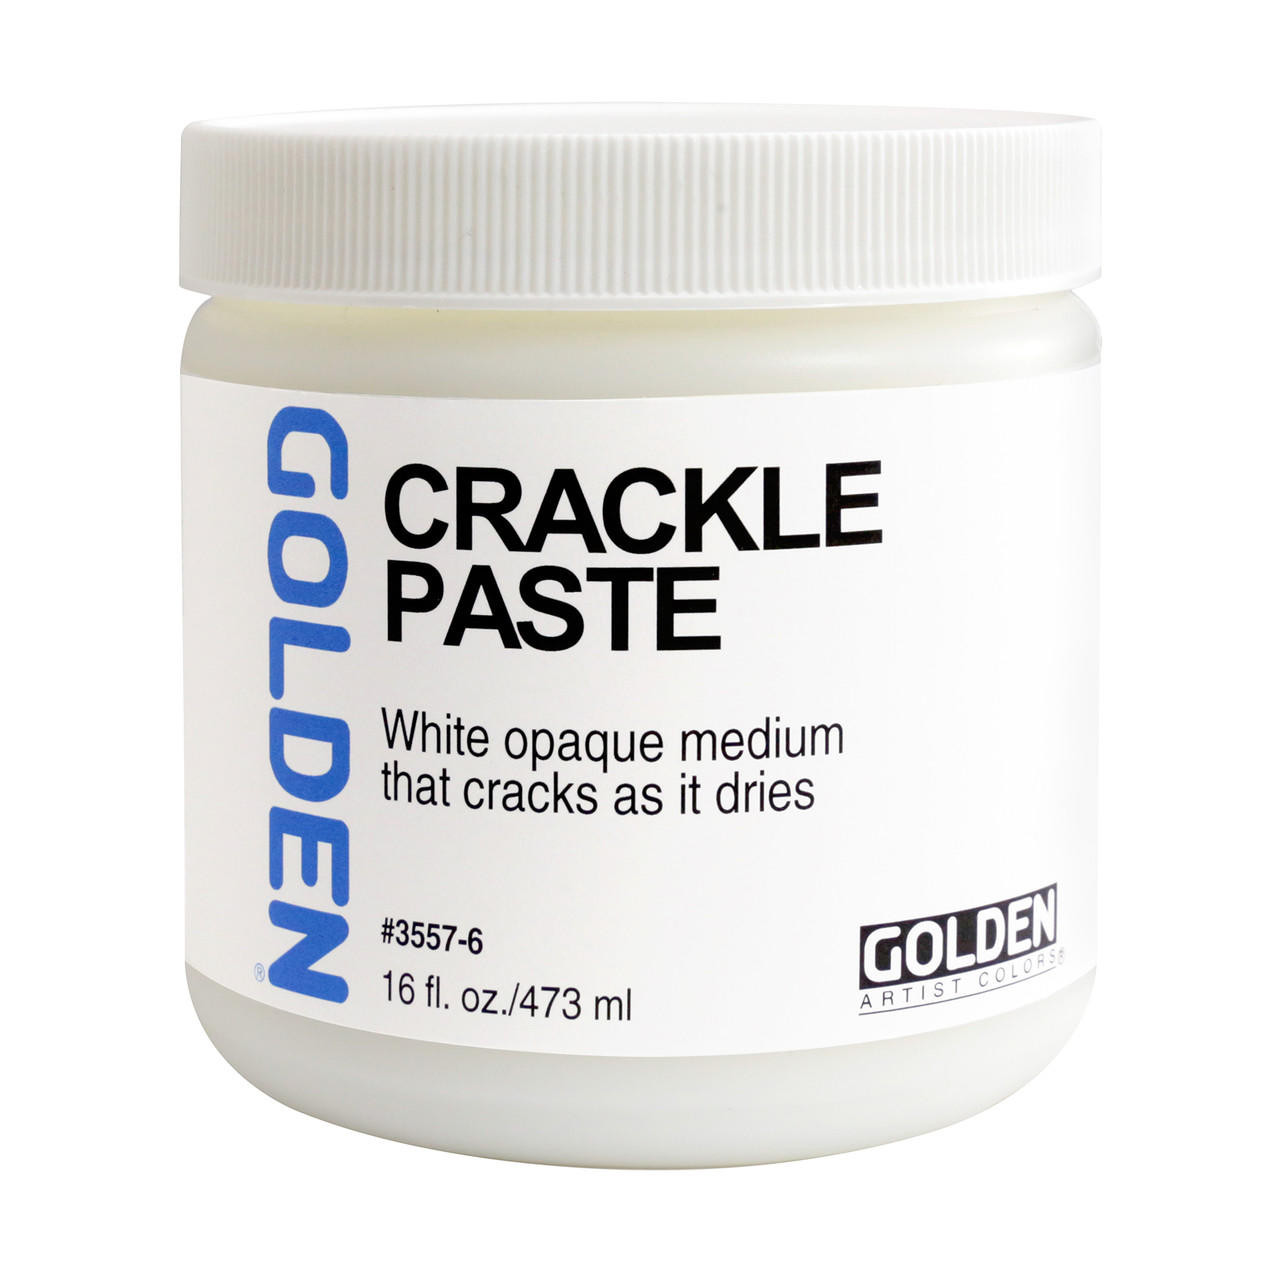 Golden 8 oz Crackle Paste